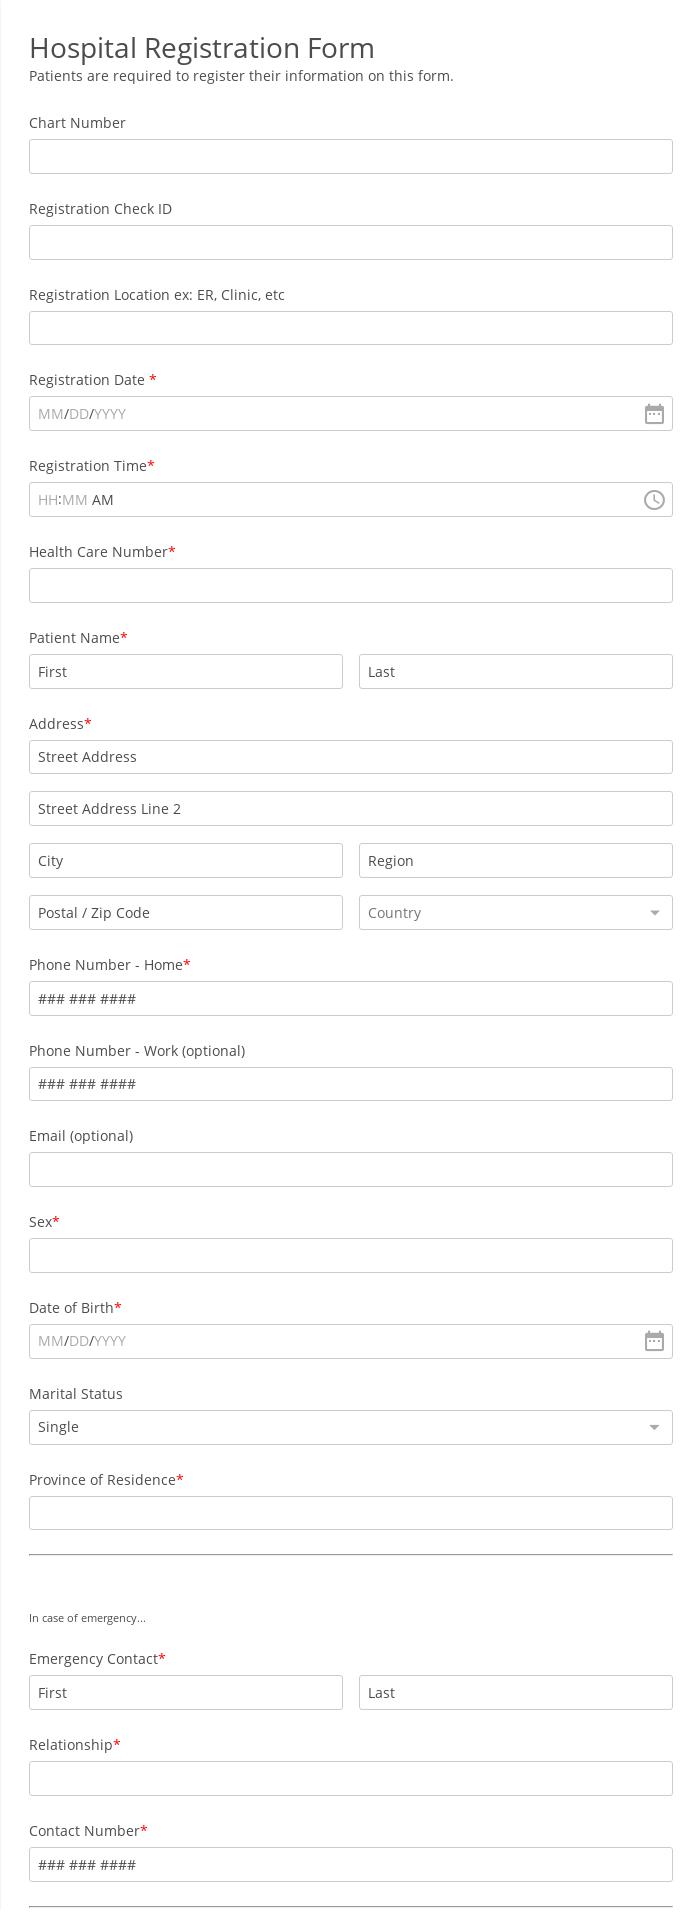 Hospital Registration Form